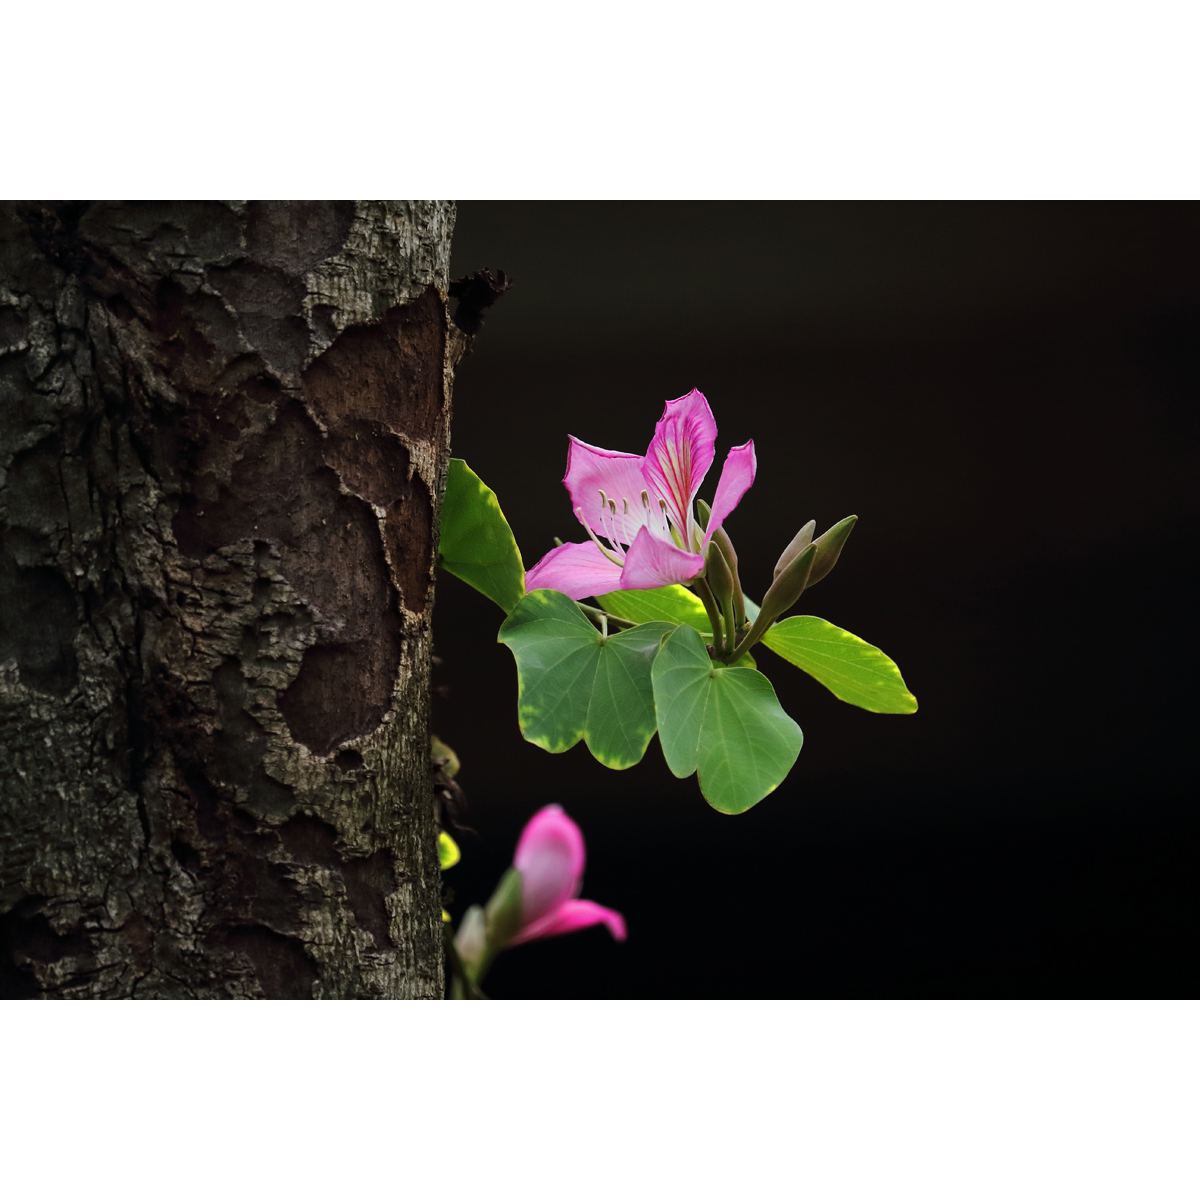 原创高清花卉生态摄影/高分辨率图片素材-紫荆花(1张)